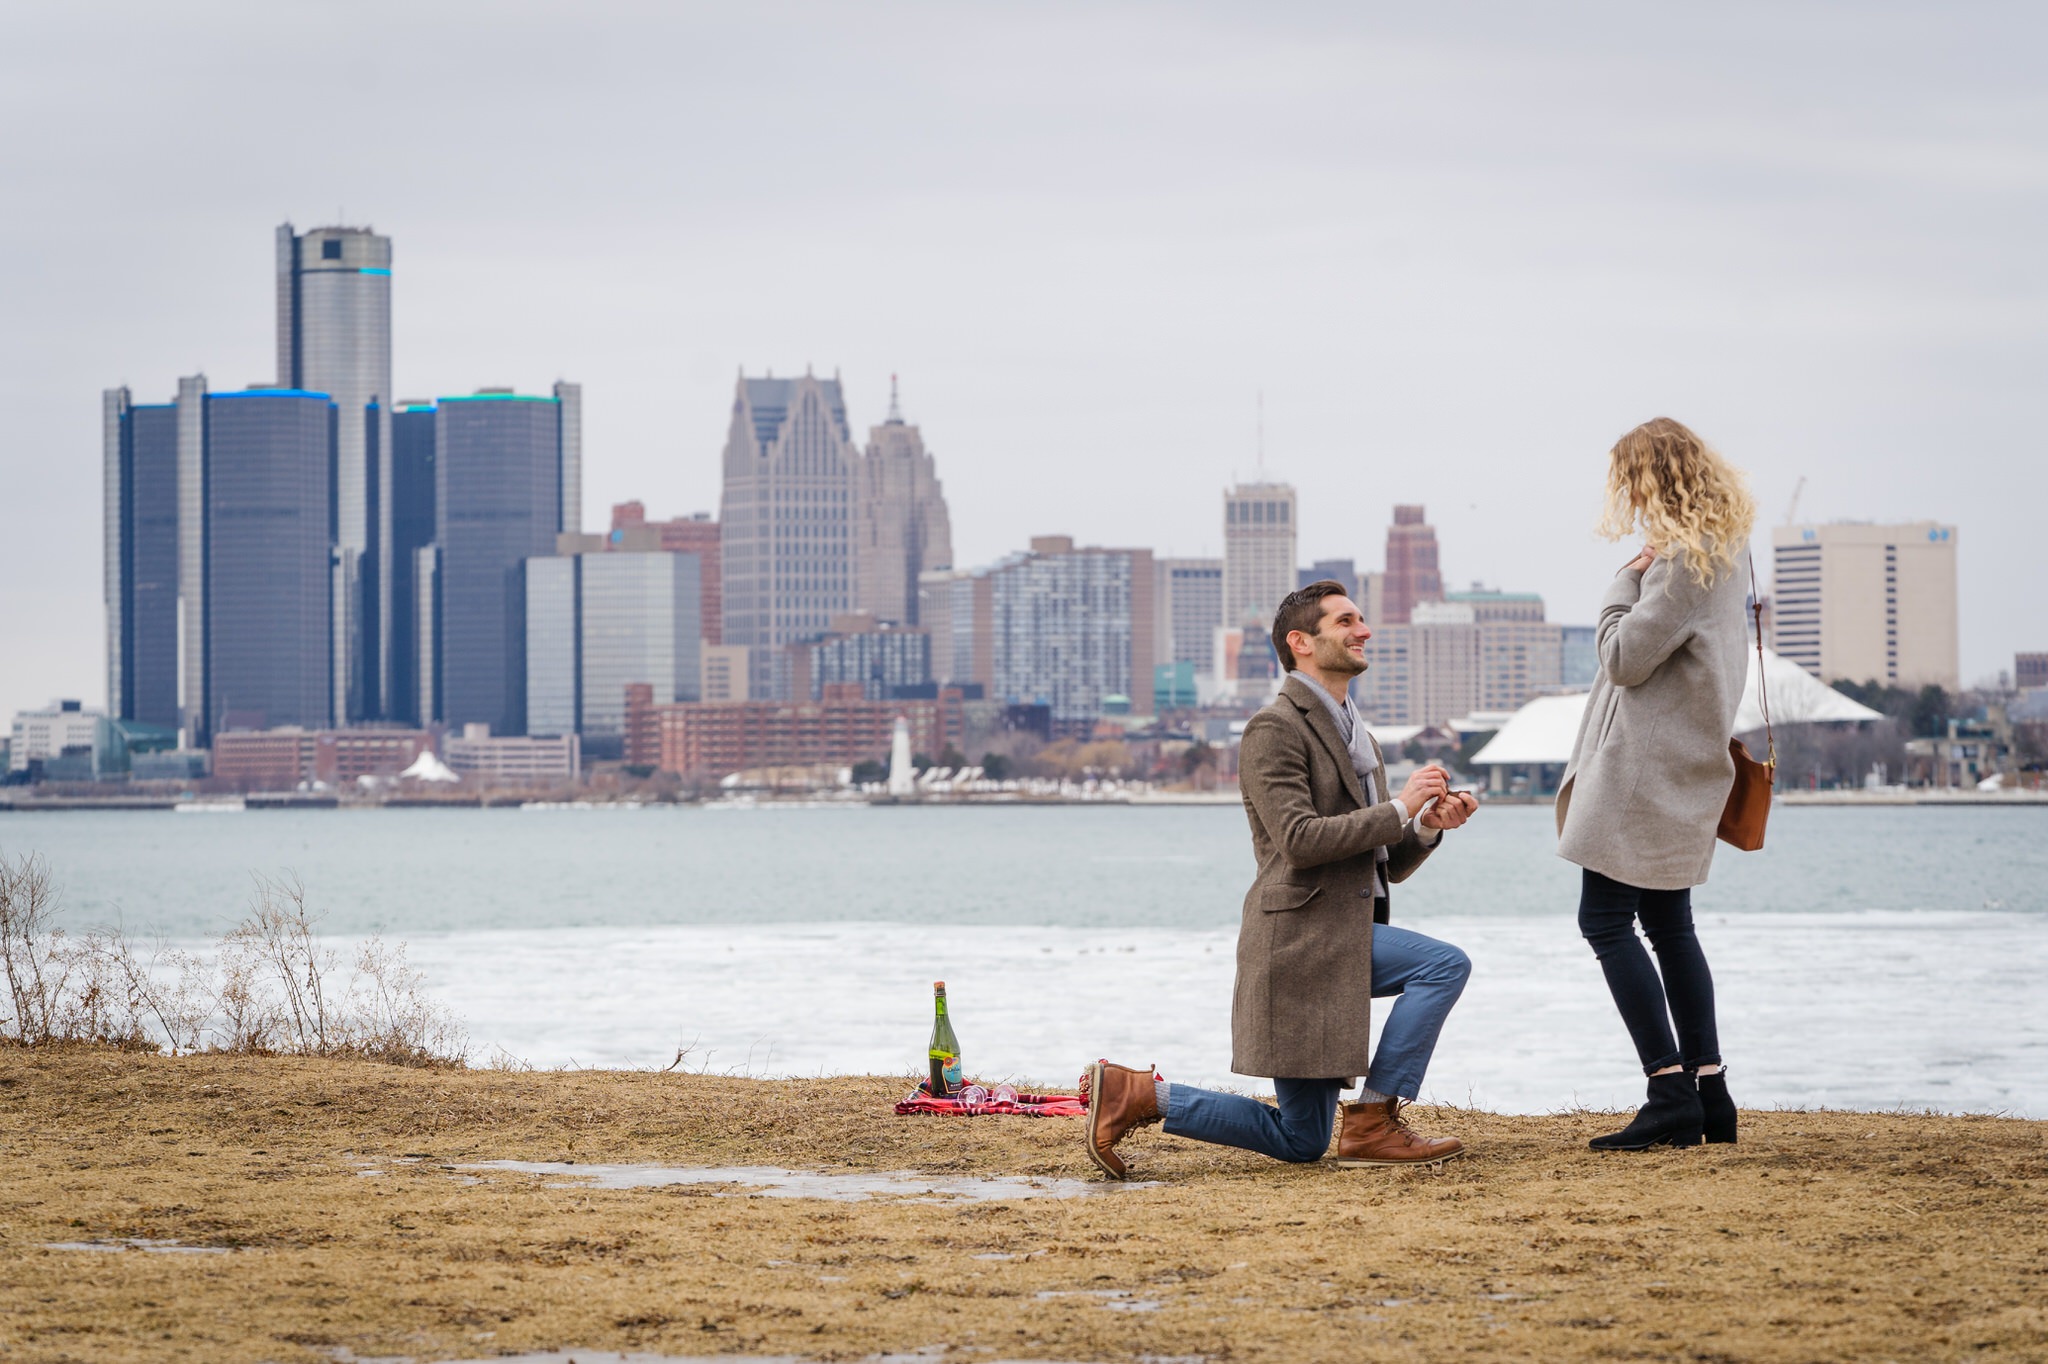 Valentine's Day proposal